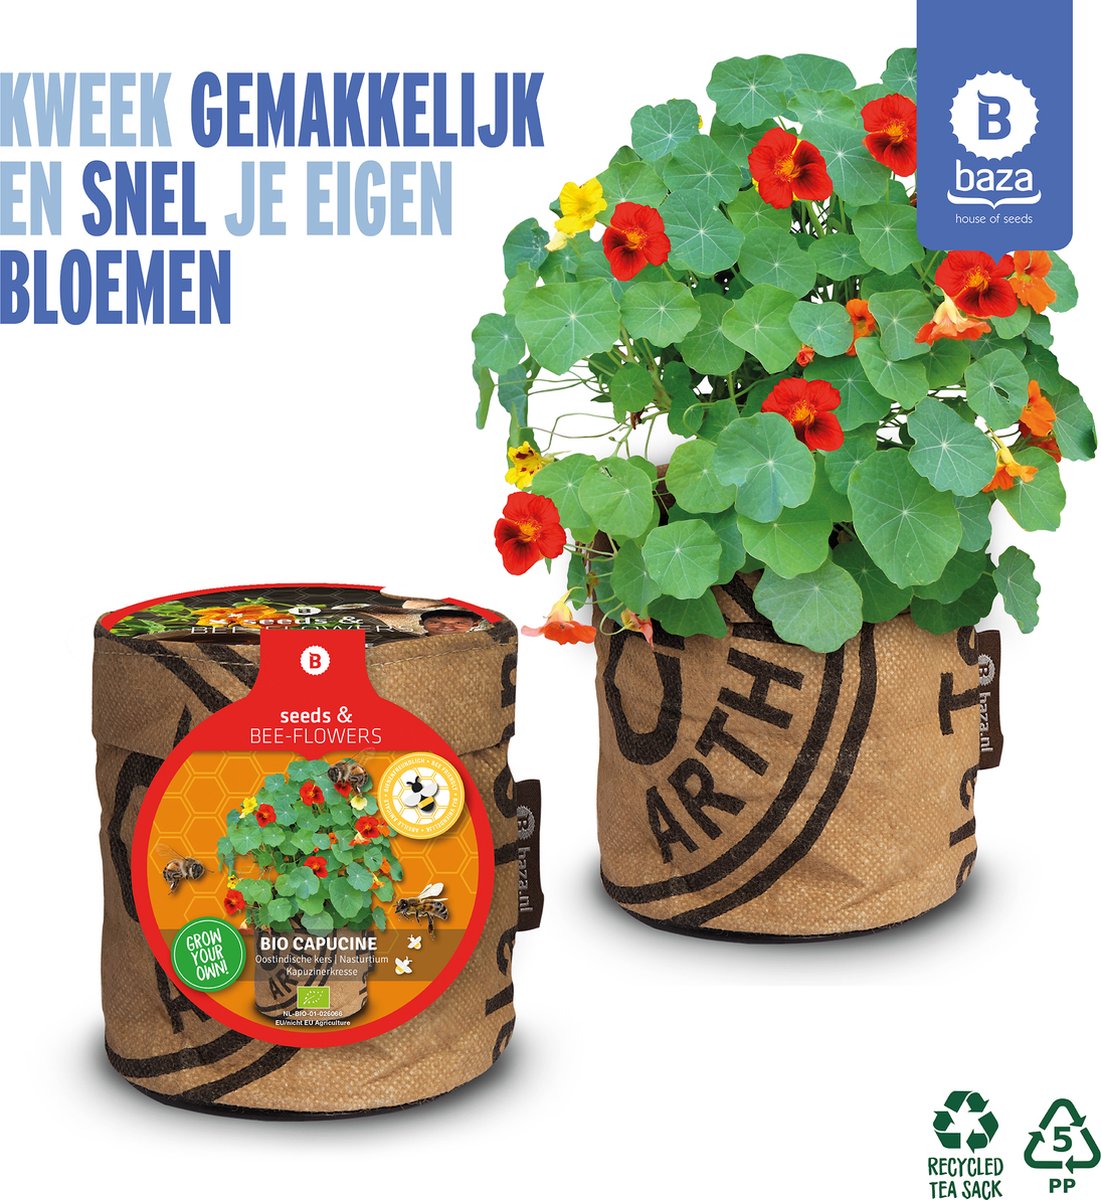 Seeds & BEE-Flowers kweekset Oostindische kers / BIO/ gerecycled/ cadeau idee